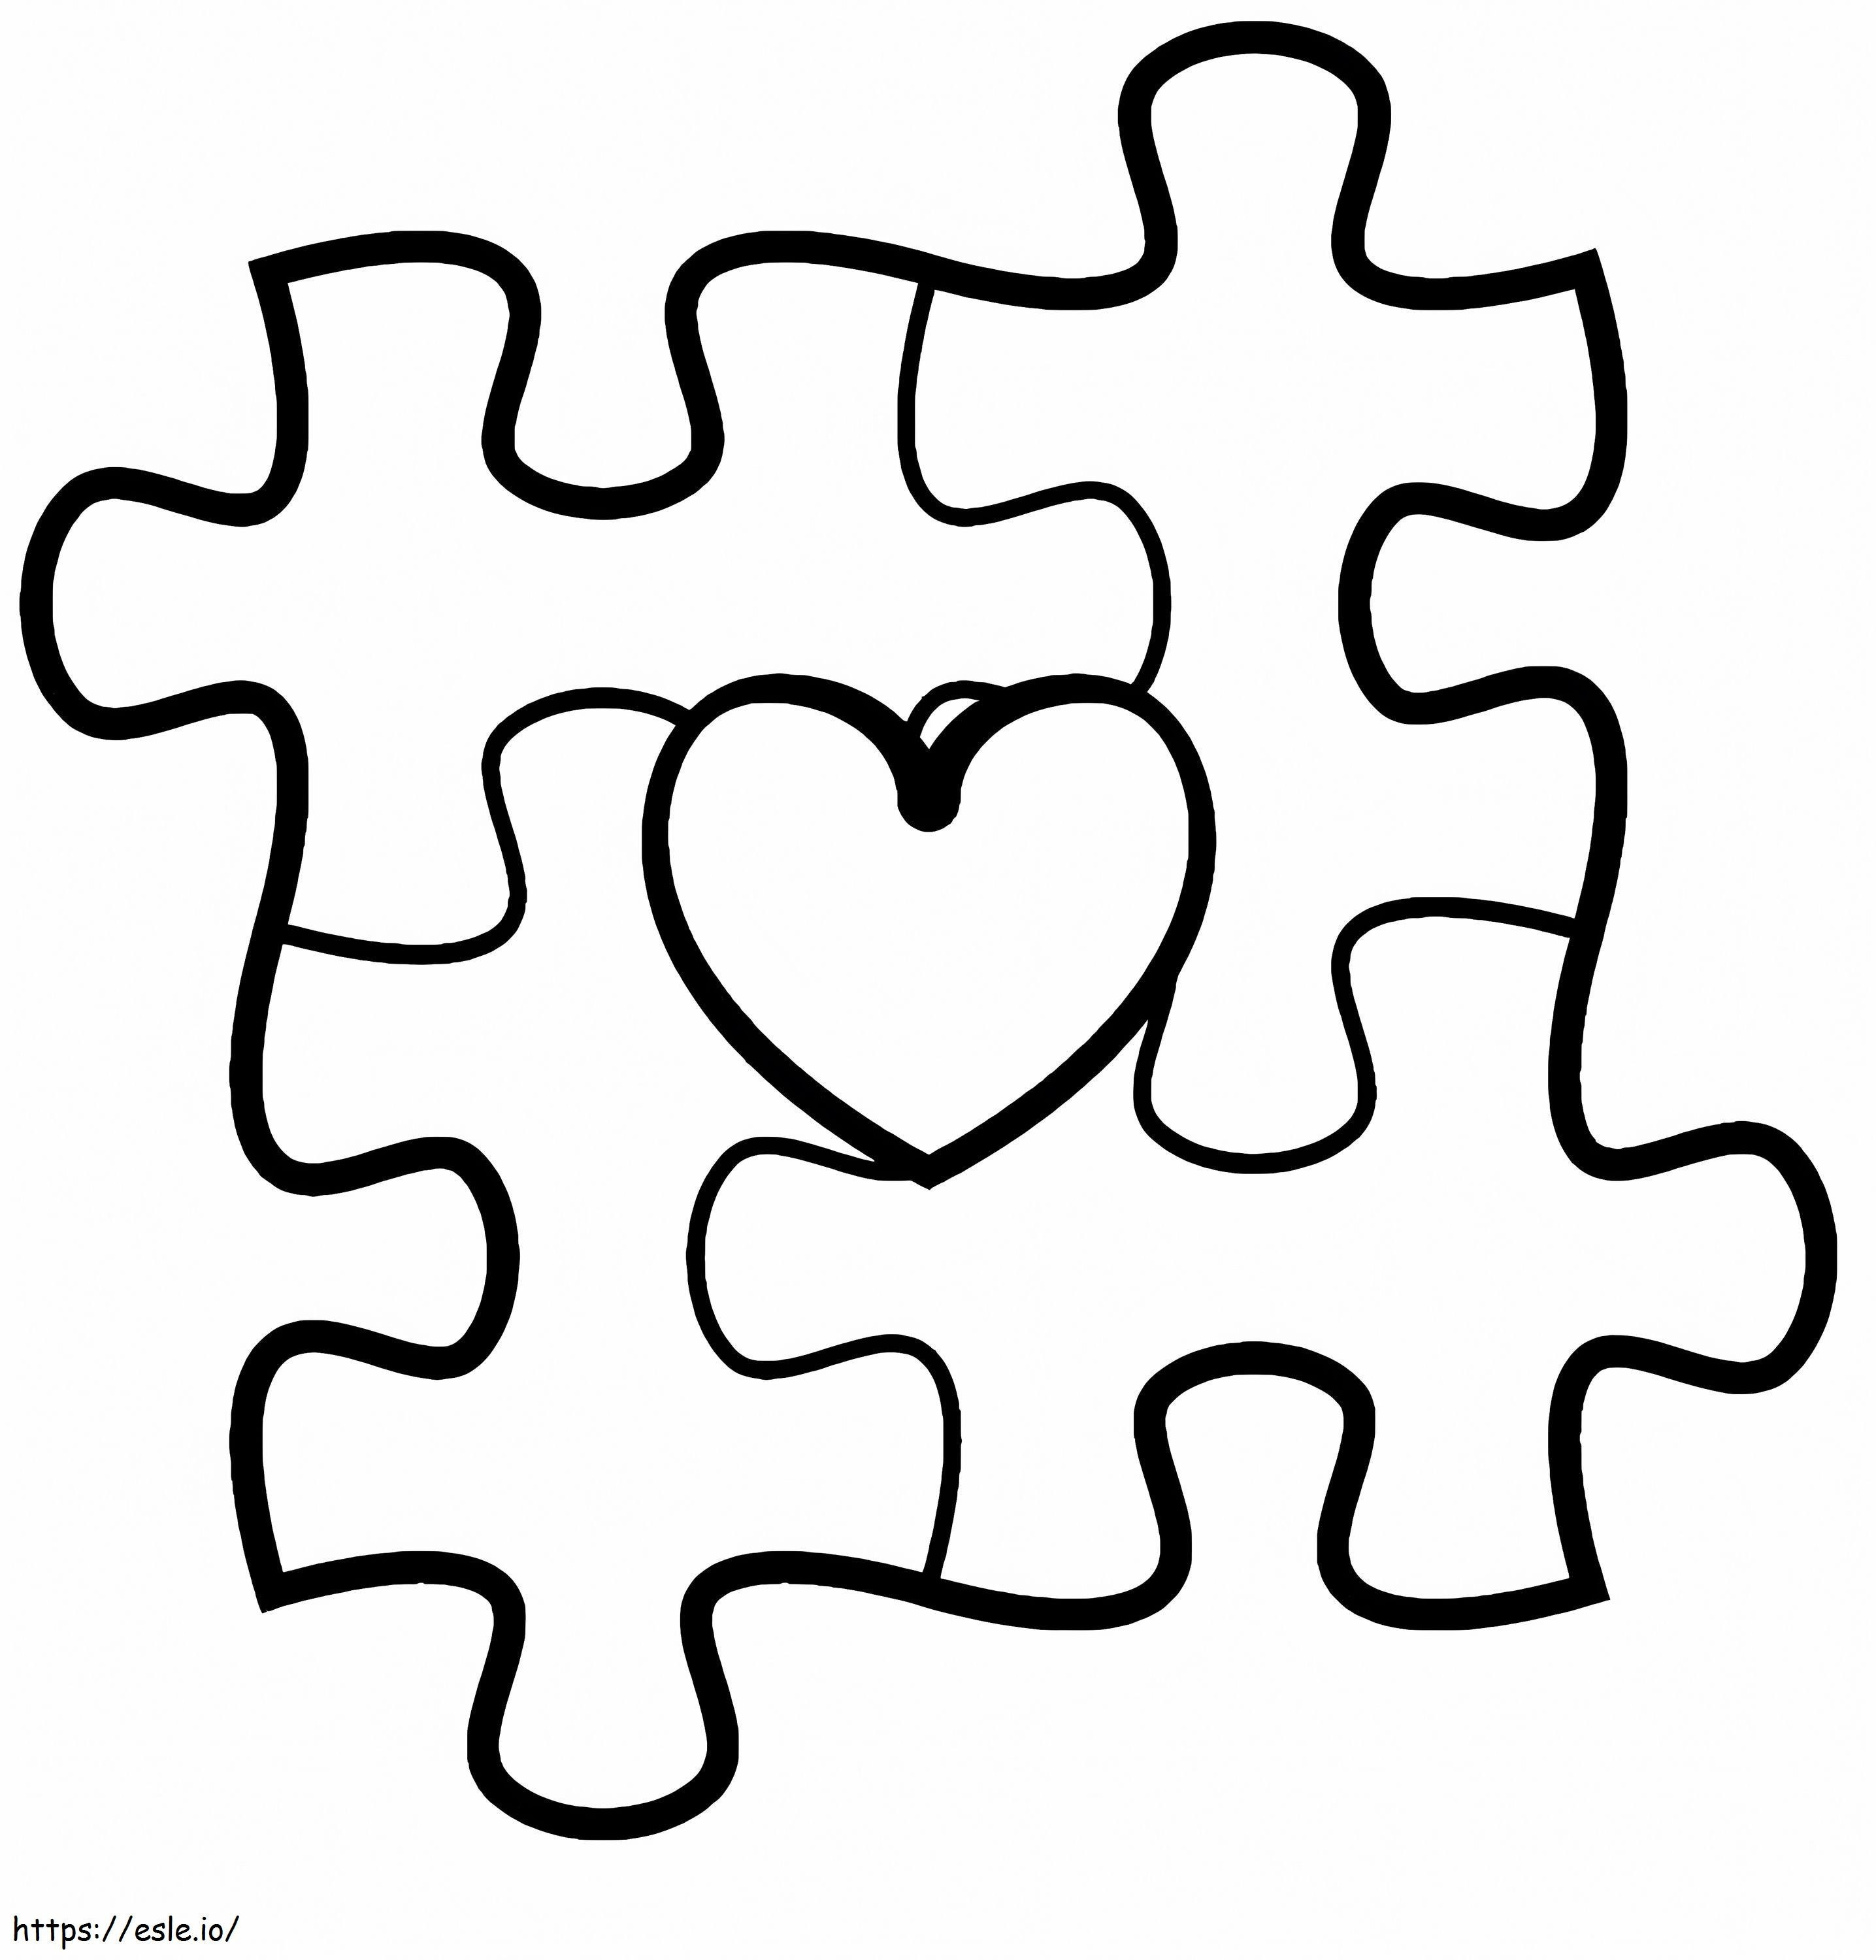 Coloriage Pièces de puzzle de sensibilisation à l'autisme, cœur à imprimer dessin